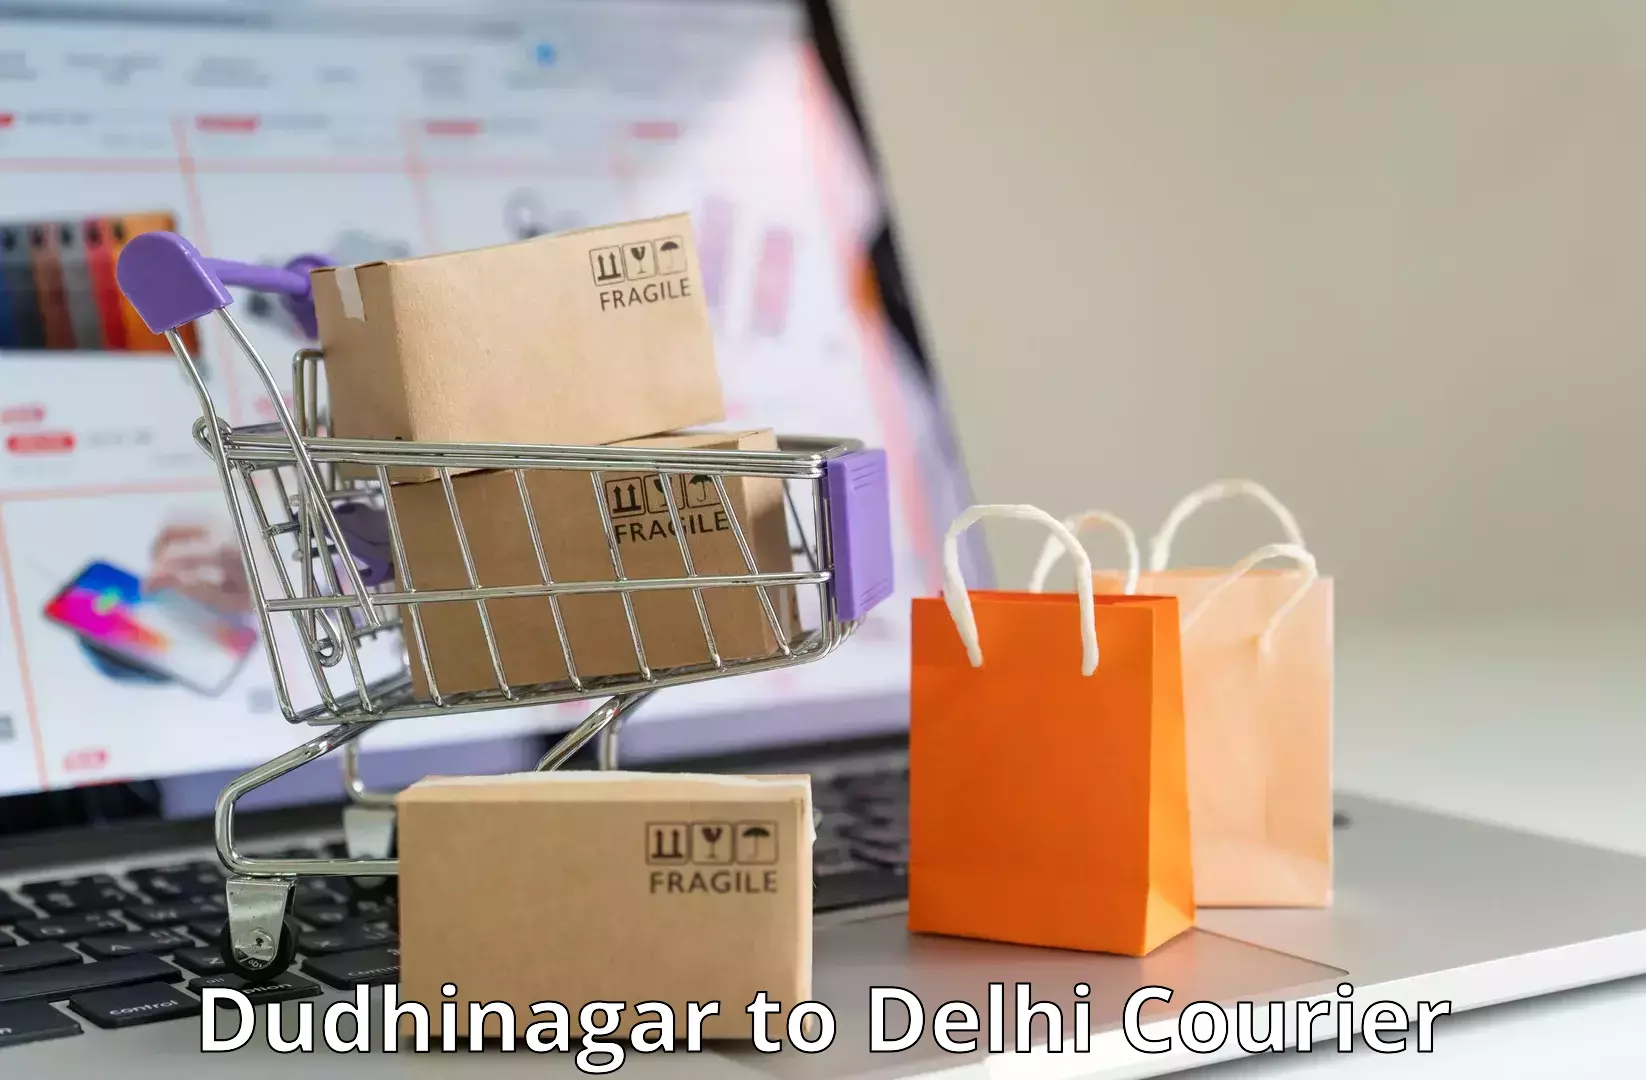 Customizable shipping options Dudhinagar to Krishna Nagar